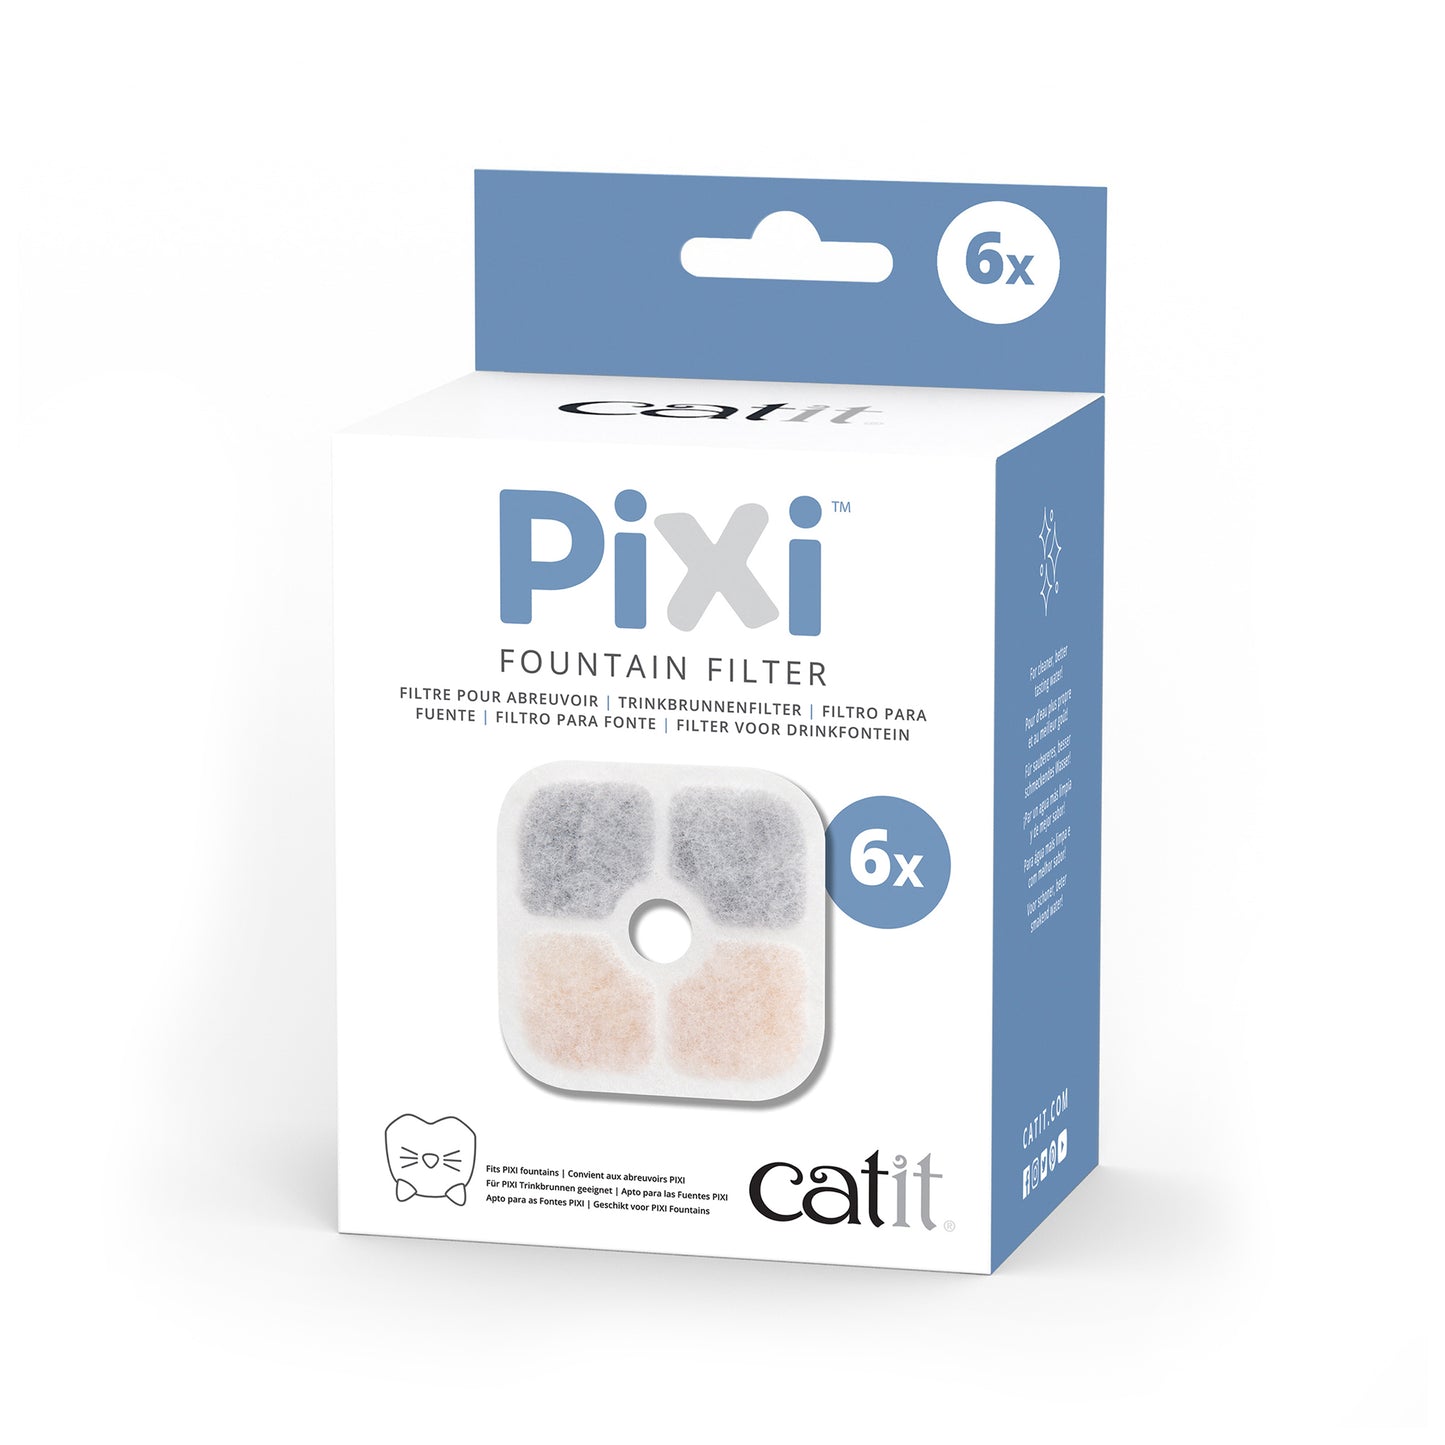 CATIT Pixi Fountain Filter, 6 pack